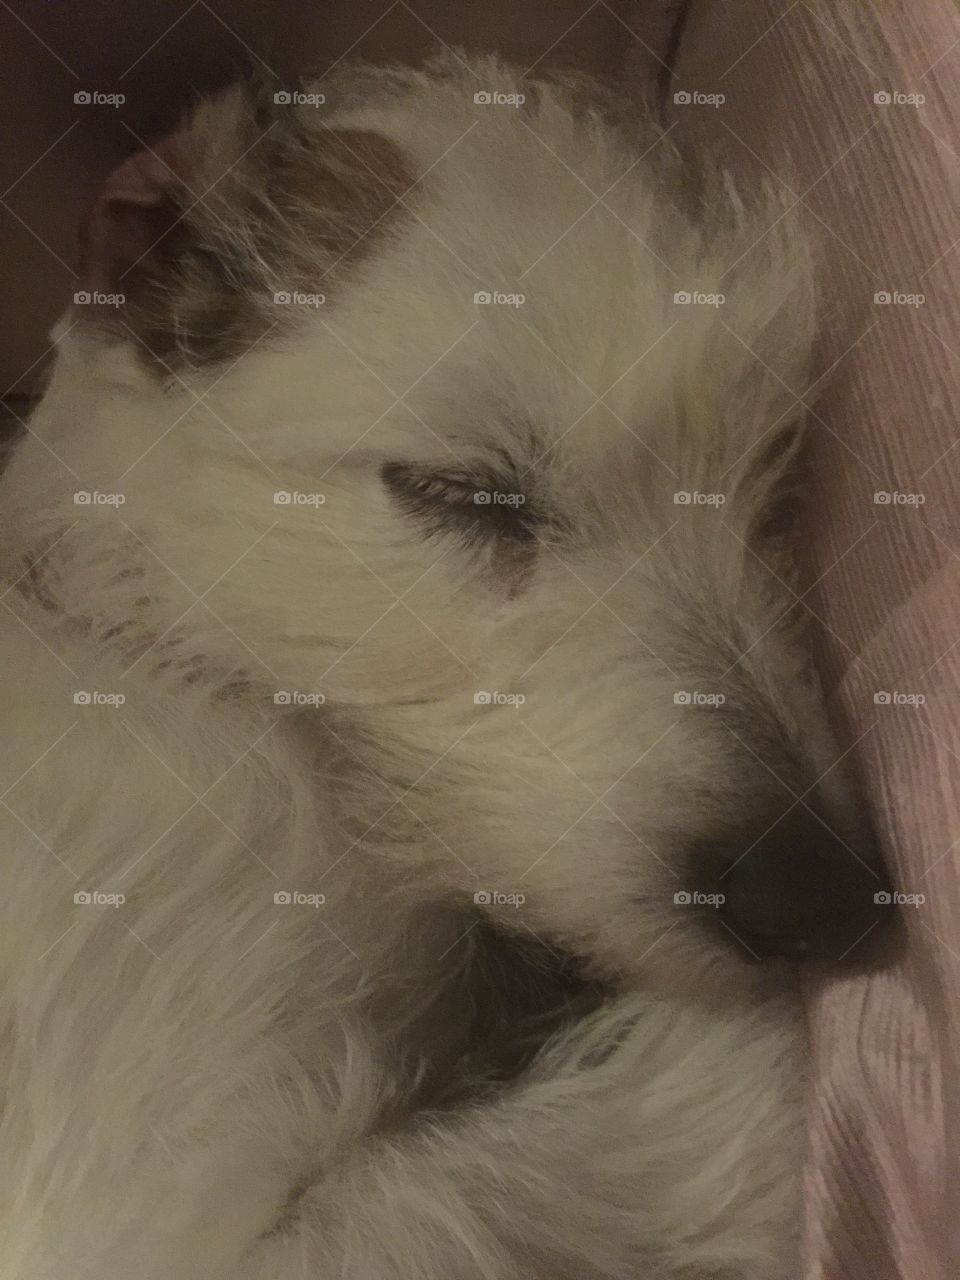 Terrier sleeping 